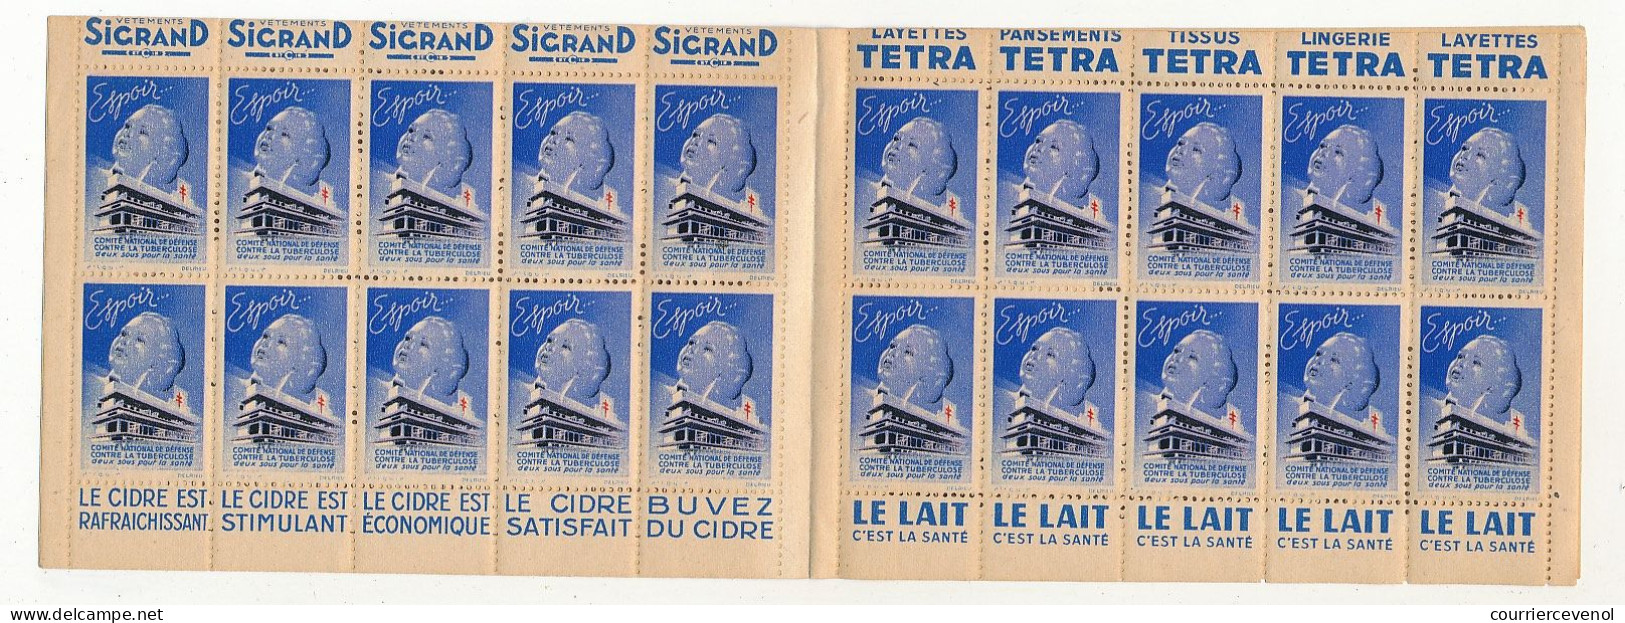 Carnet Anti-tuberculeux 1939 - 13ème Campagne - 2 Fr - 20 Timbres à 10c  - Pubs Sigrand, Cidre, Tissus Tetra, Lait... - Blokken & Postzegelboekjes